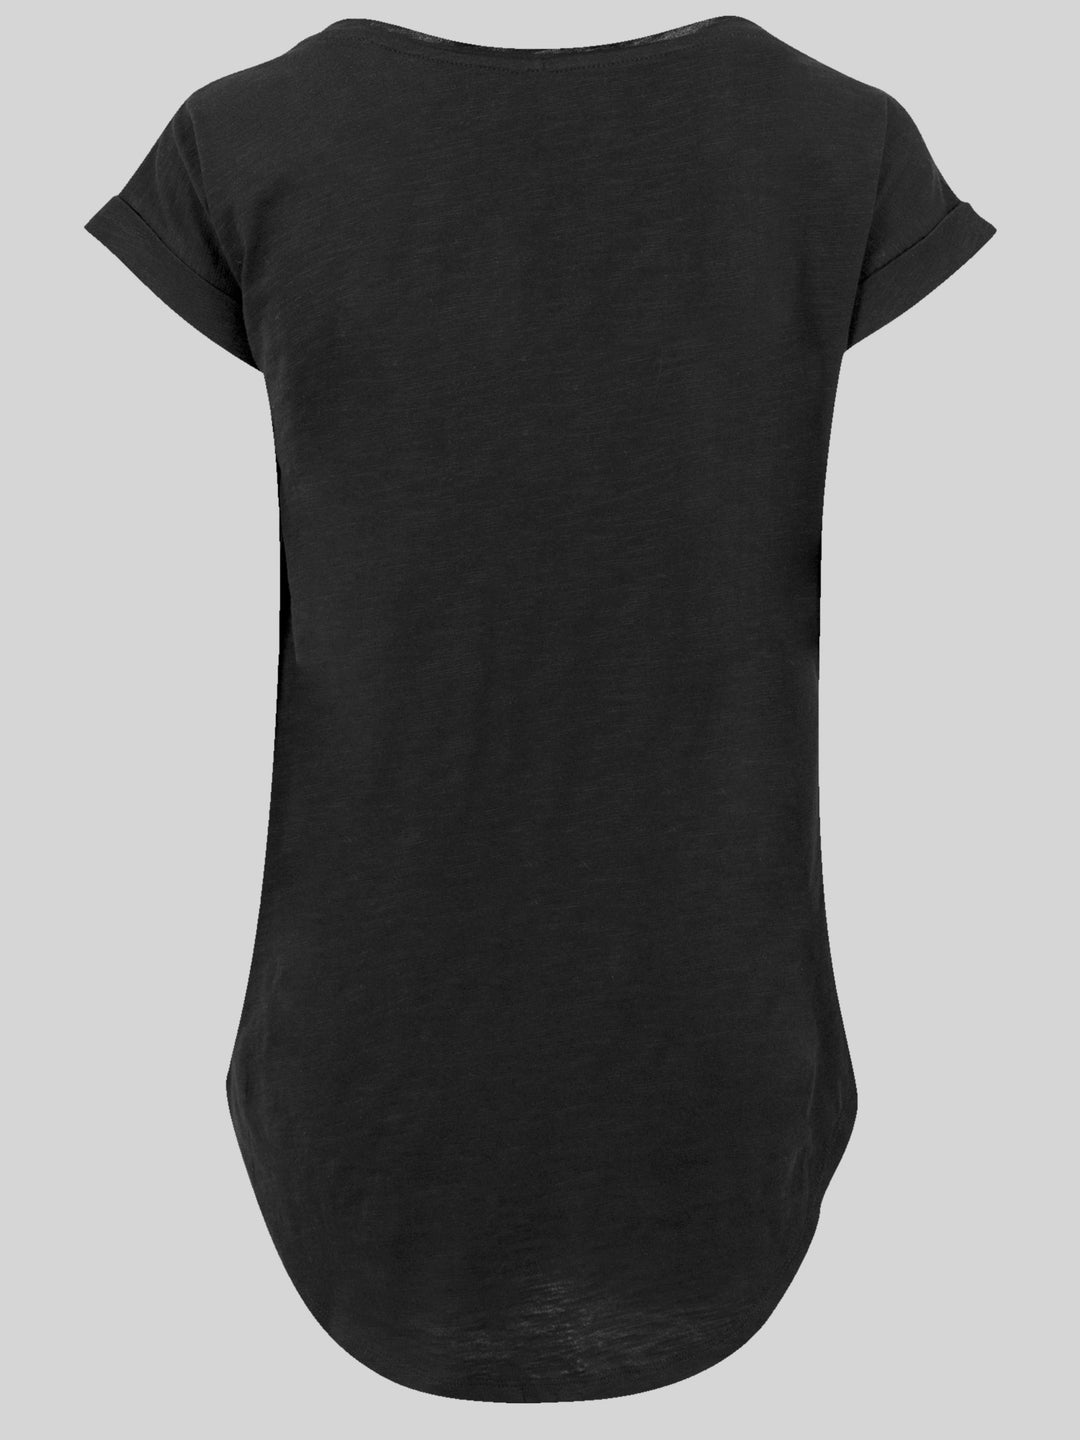 David Bowie T-Shirt | Cross Smoke | Premium Long Damen T Shirt